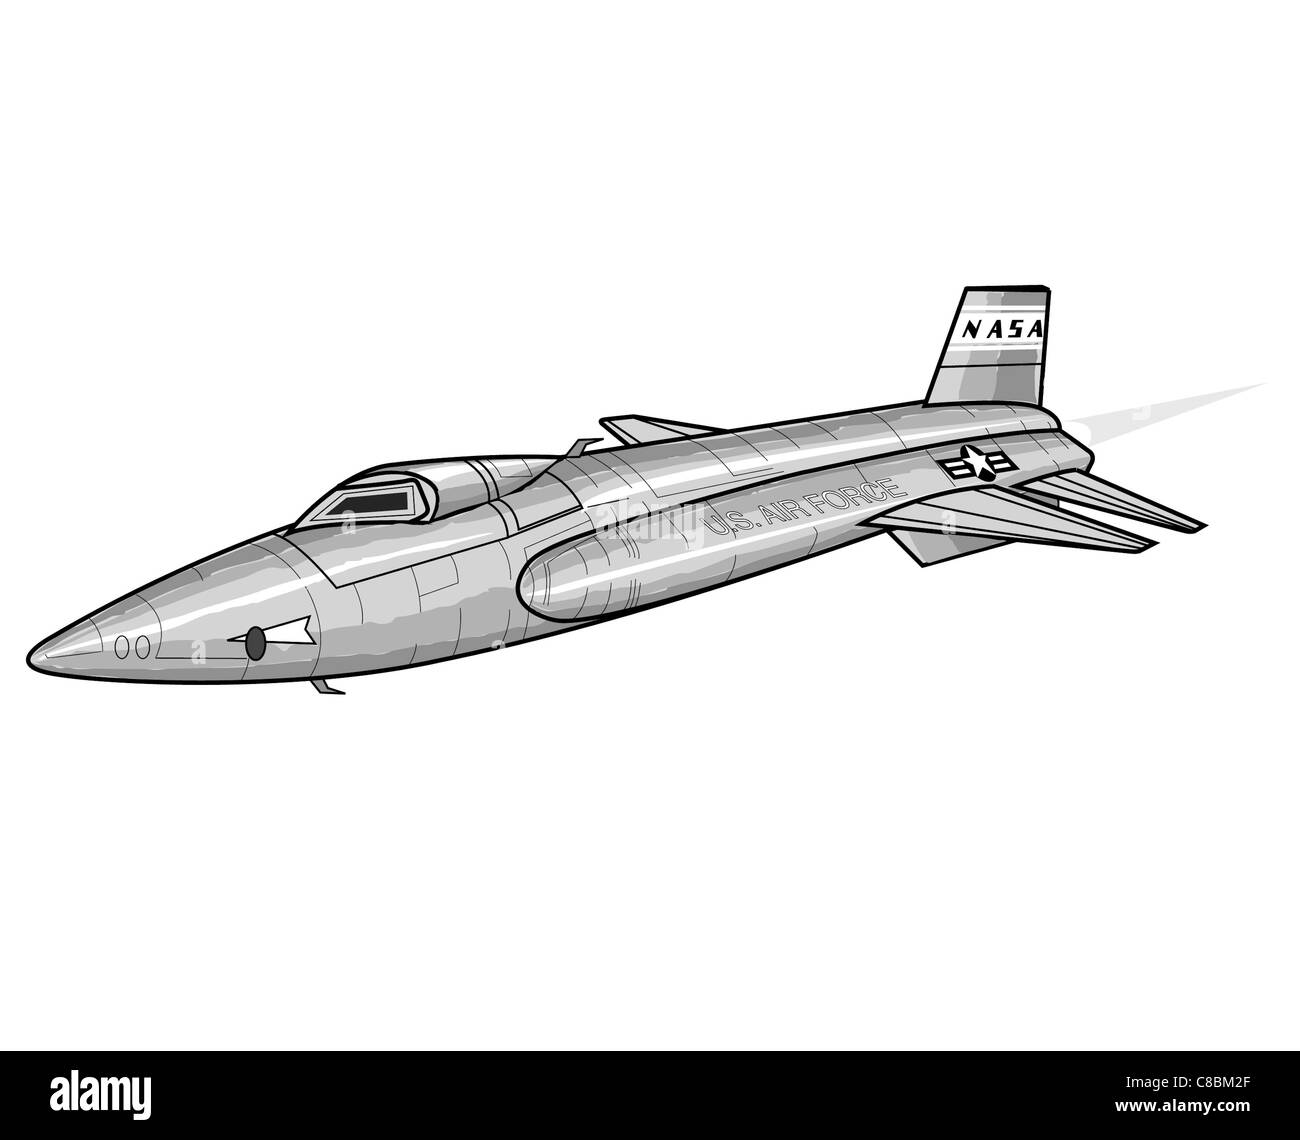 3 aviones ver ilustración X-15 Foto de stock